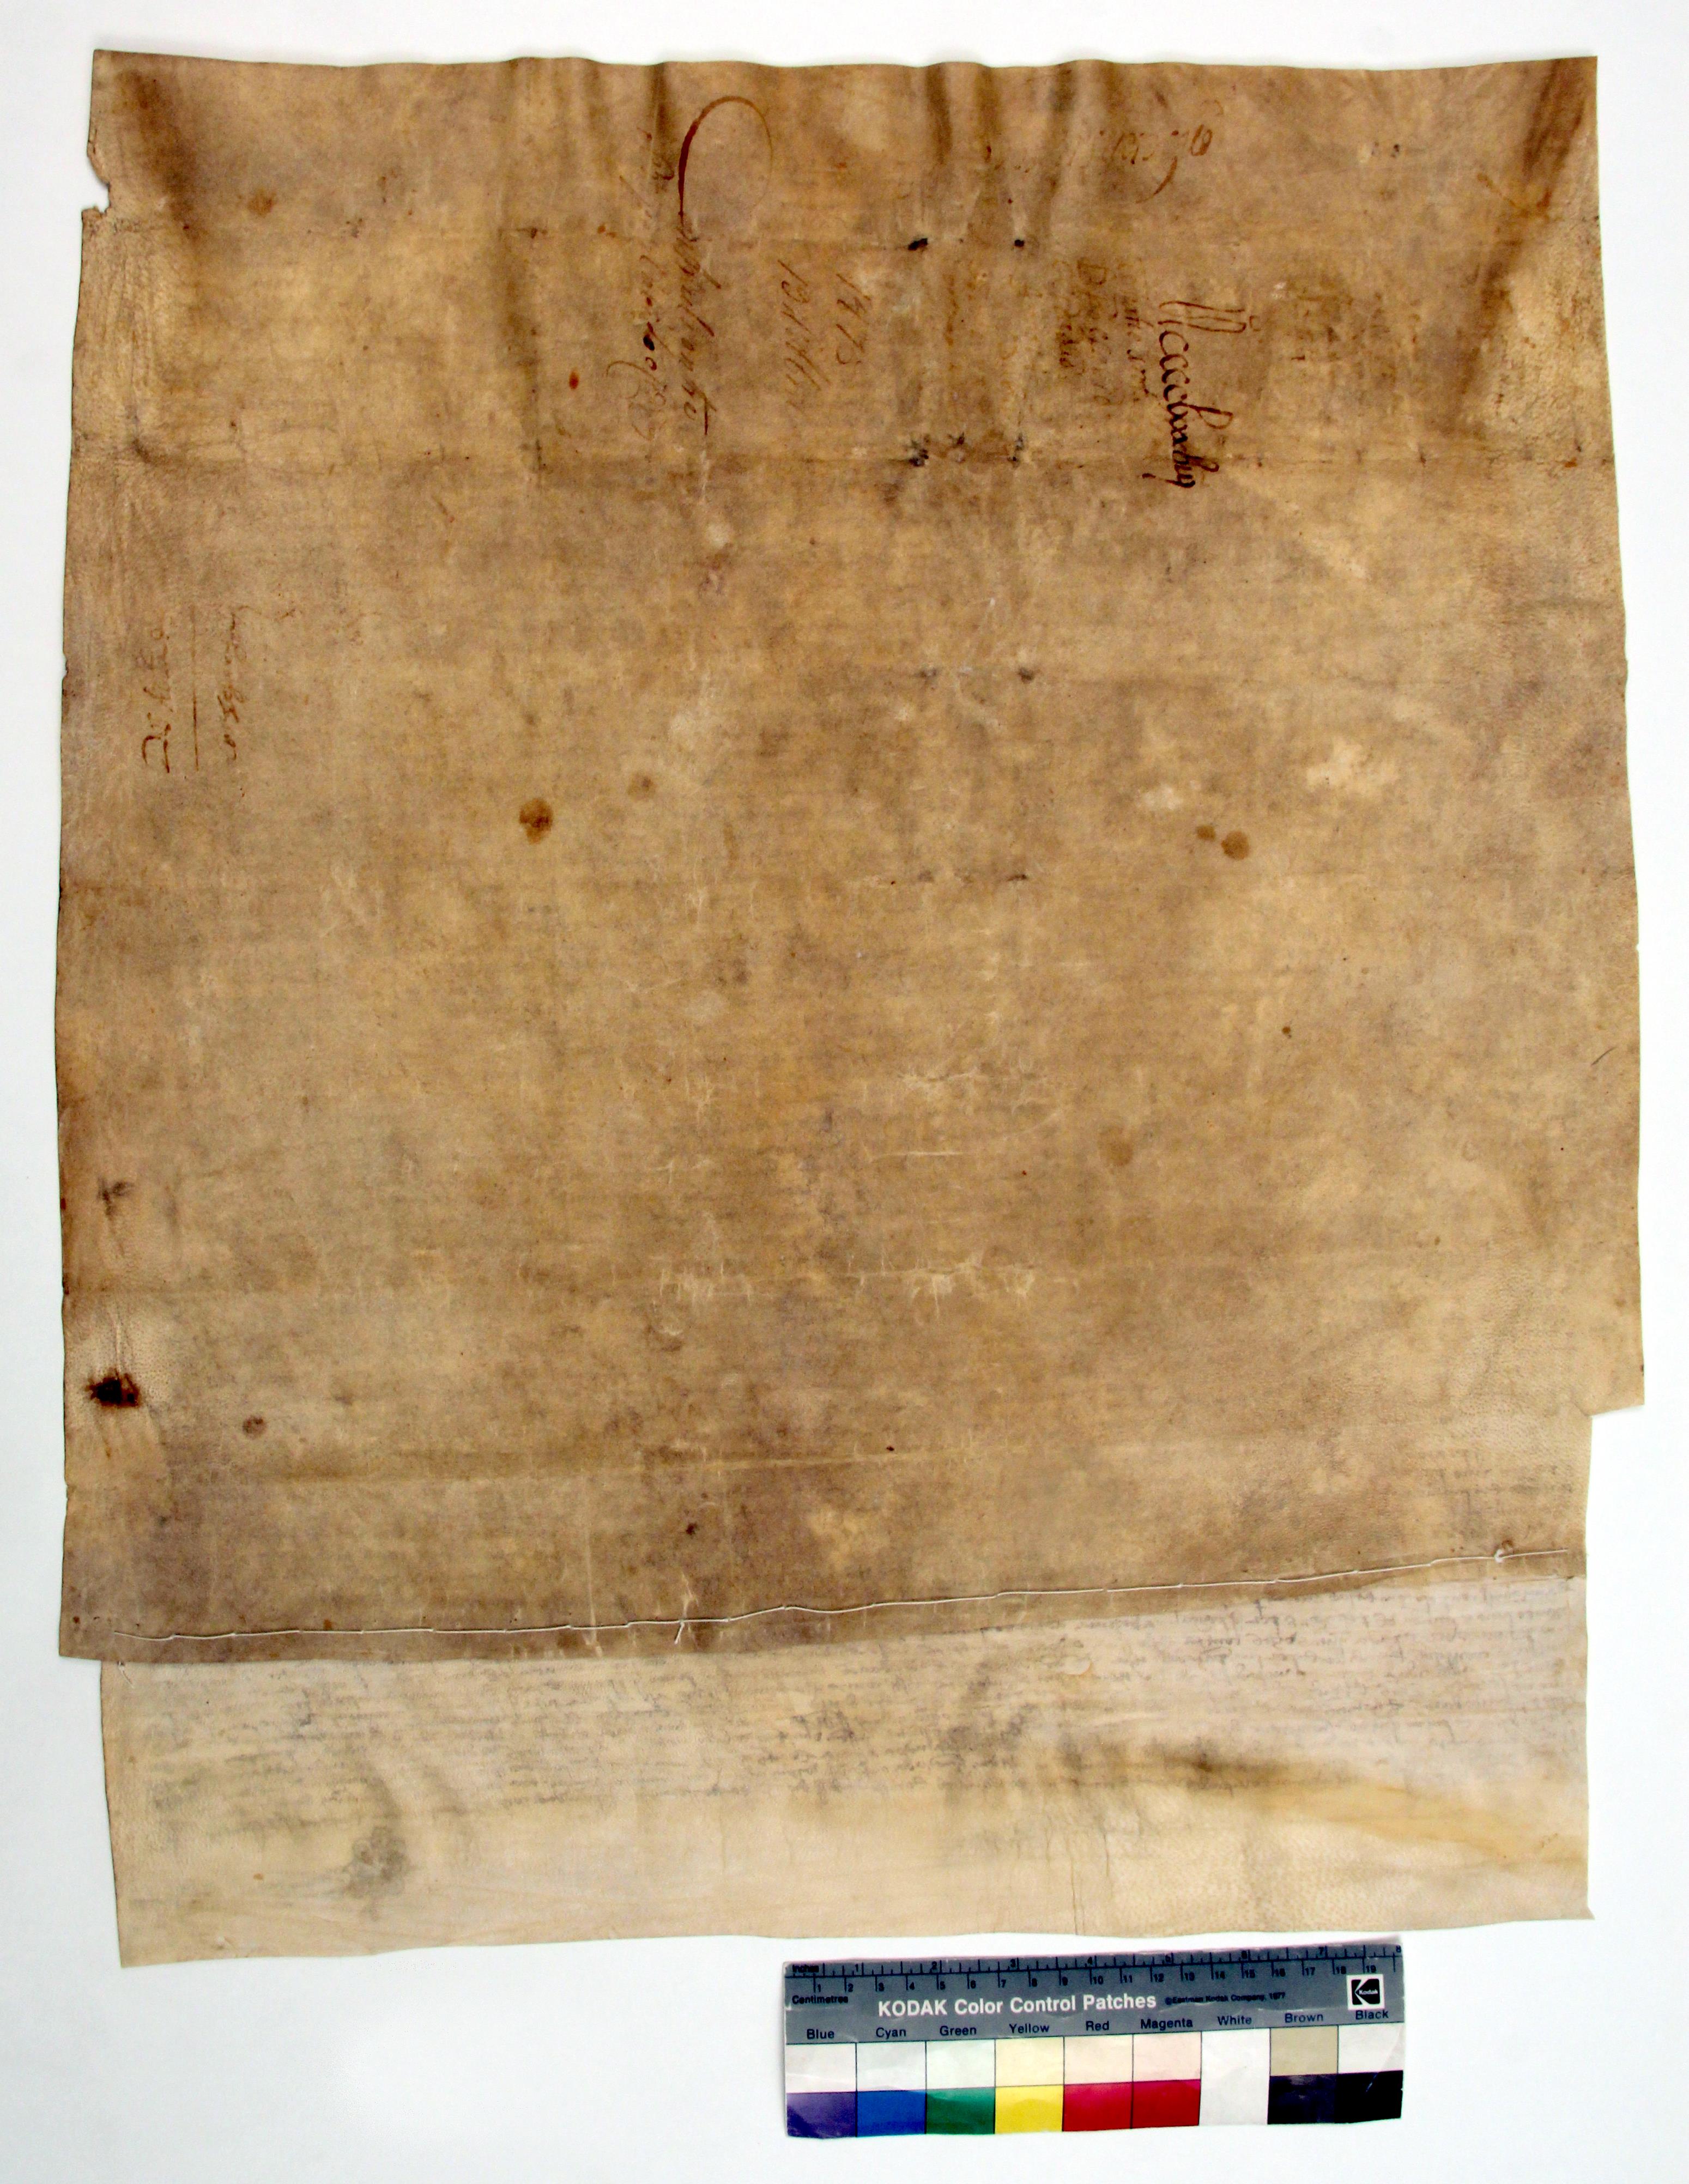 [Carta de avença e amigável composição estabelecida entre o bispo e o cabido do Porto e a cidade sobre o pagamento de dízimas]